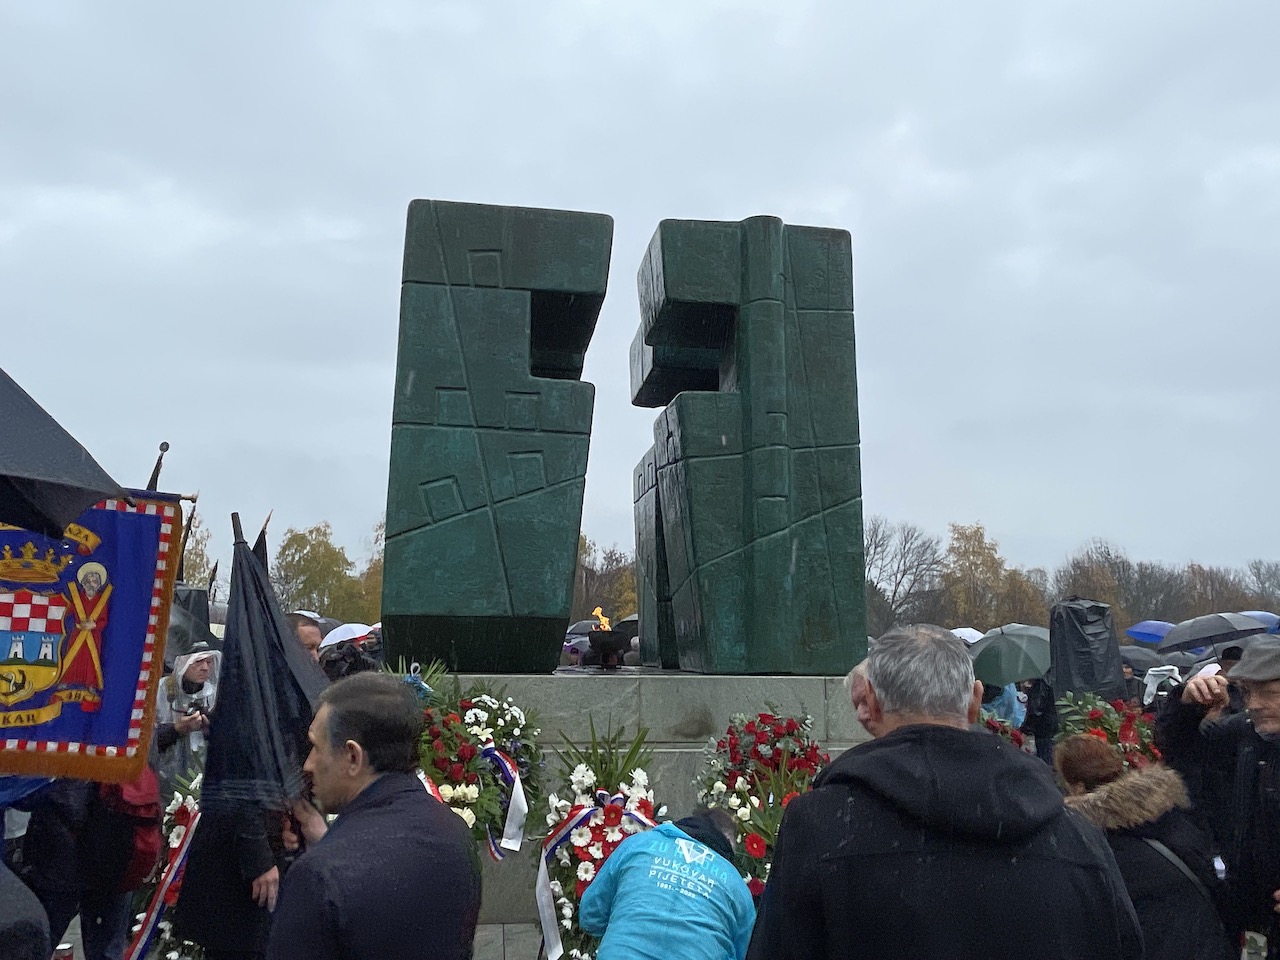 Dan sjećanja na žrtve Domovinskog rata i Dan sjećanja na žrtvu Vukovara i Škabrnje obilježavamo u znak sjećanja na 18. studenoga 1991. godine kada je slomljena herojska obrana grada Vukovara, a u Škabrnji počinjen stravičan zločin nad tamošnjim stanovništvom. Dan sjećanja na žrtve Domovinskog rata i Dan sjećanja na žrtvu Vukovara i Škabrnje obilježavamo u znak sjećanja na 18. studenoga 1991. godine kada je slomljena herojska obrana grada Vukovara, a u Škabrnji počinjen stravičan zločin nad tamošnjim stanovništvom.